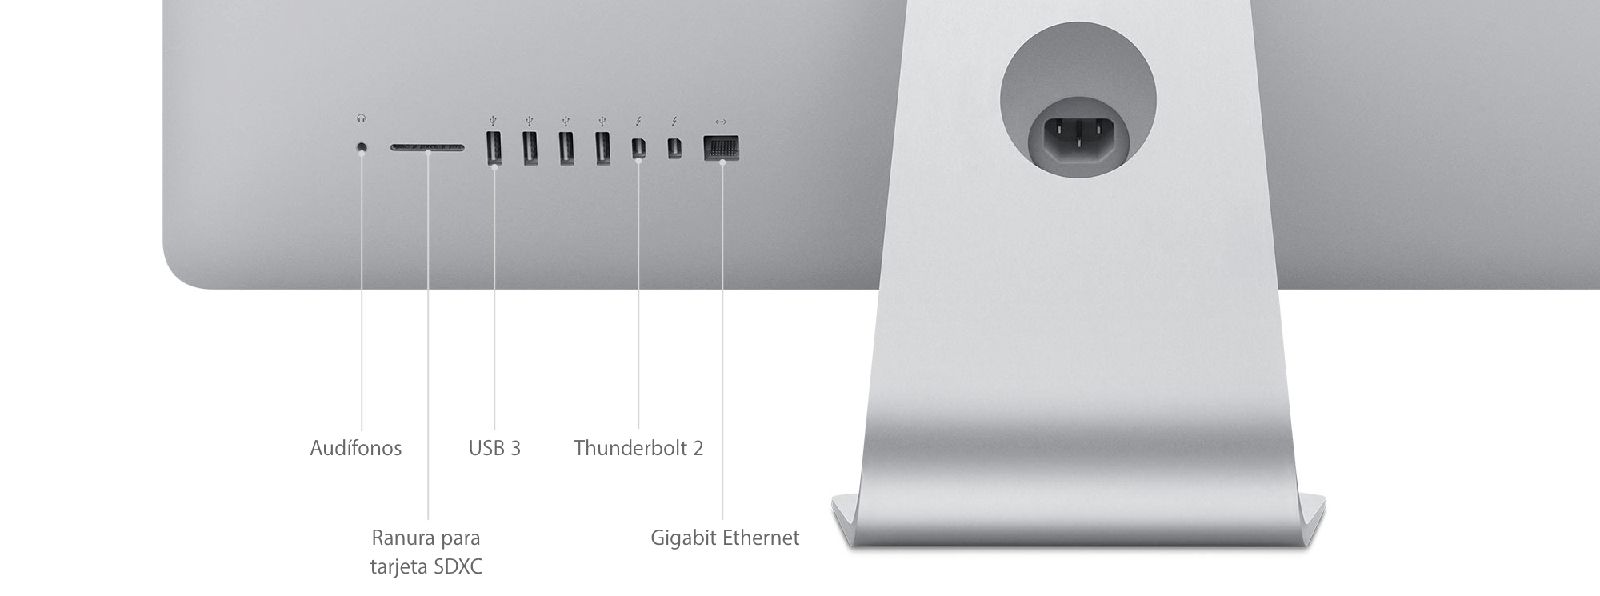 iMac (Retina 4K, 21.5 pulgadas, finales de 2015) - Especificaciones técnicas